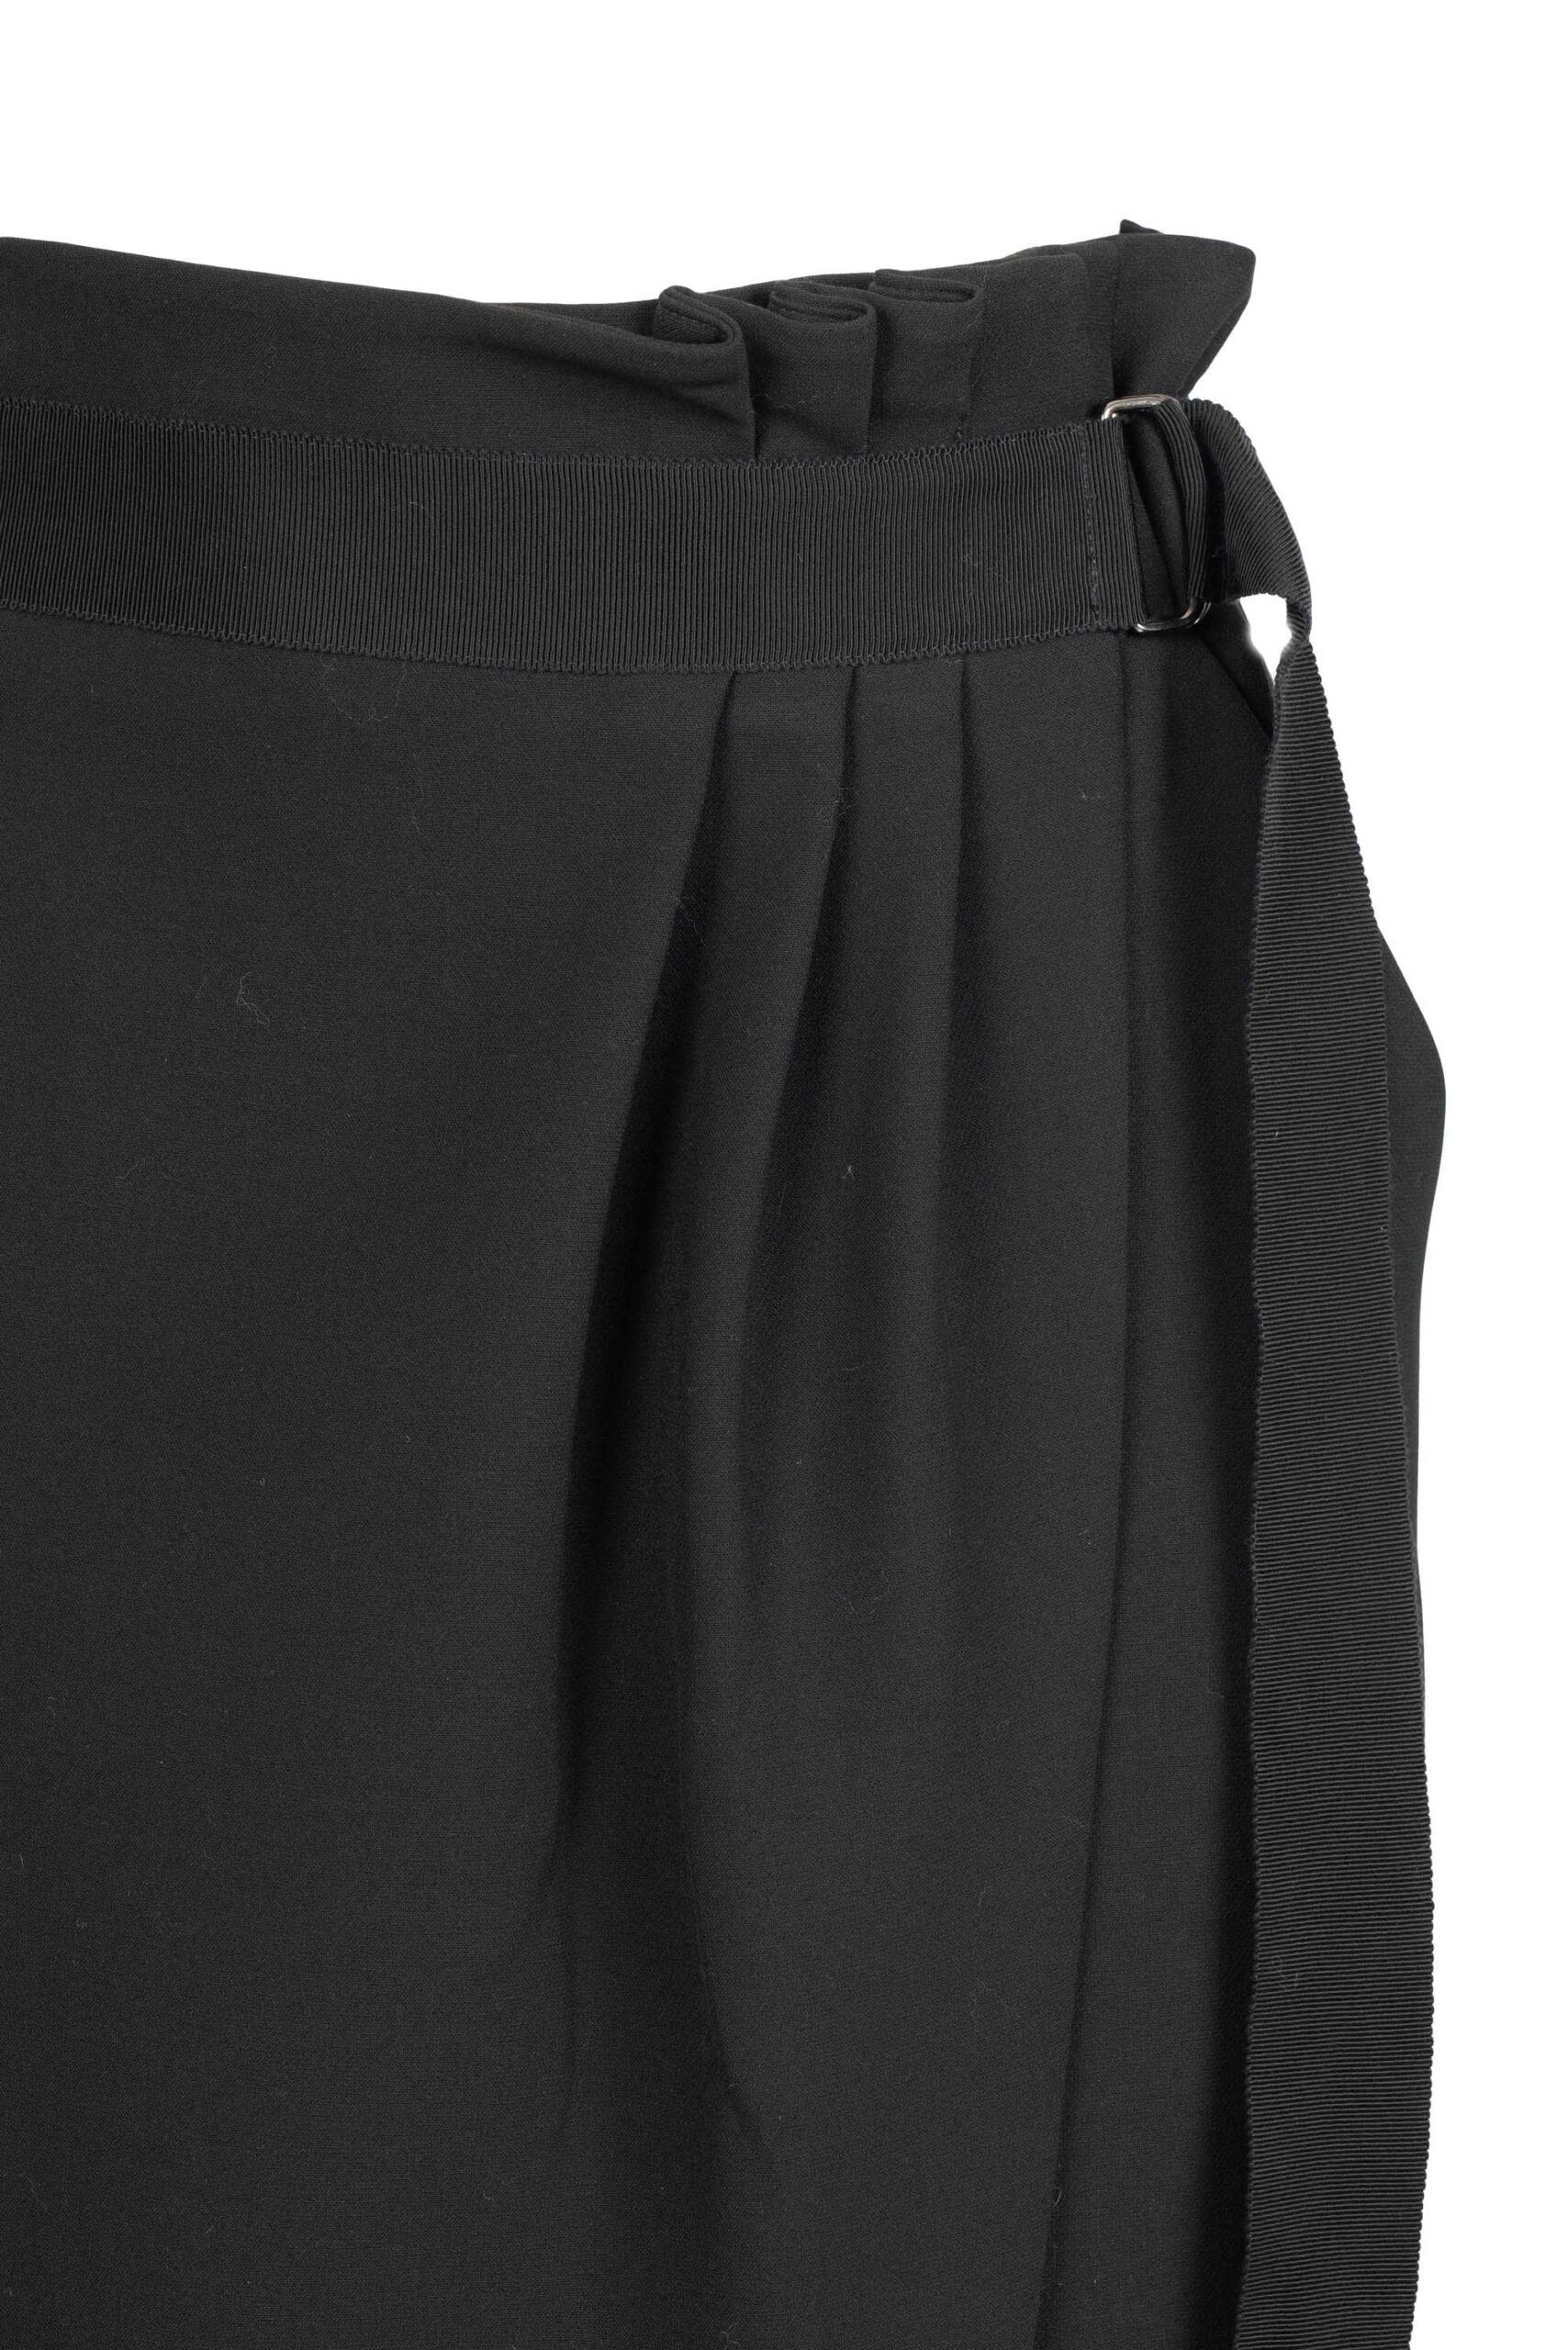 High Waist Wrap Skirt with Belt Detail